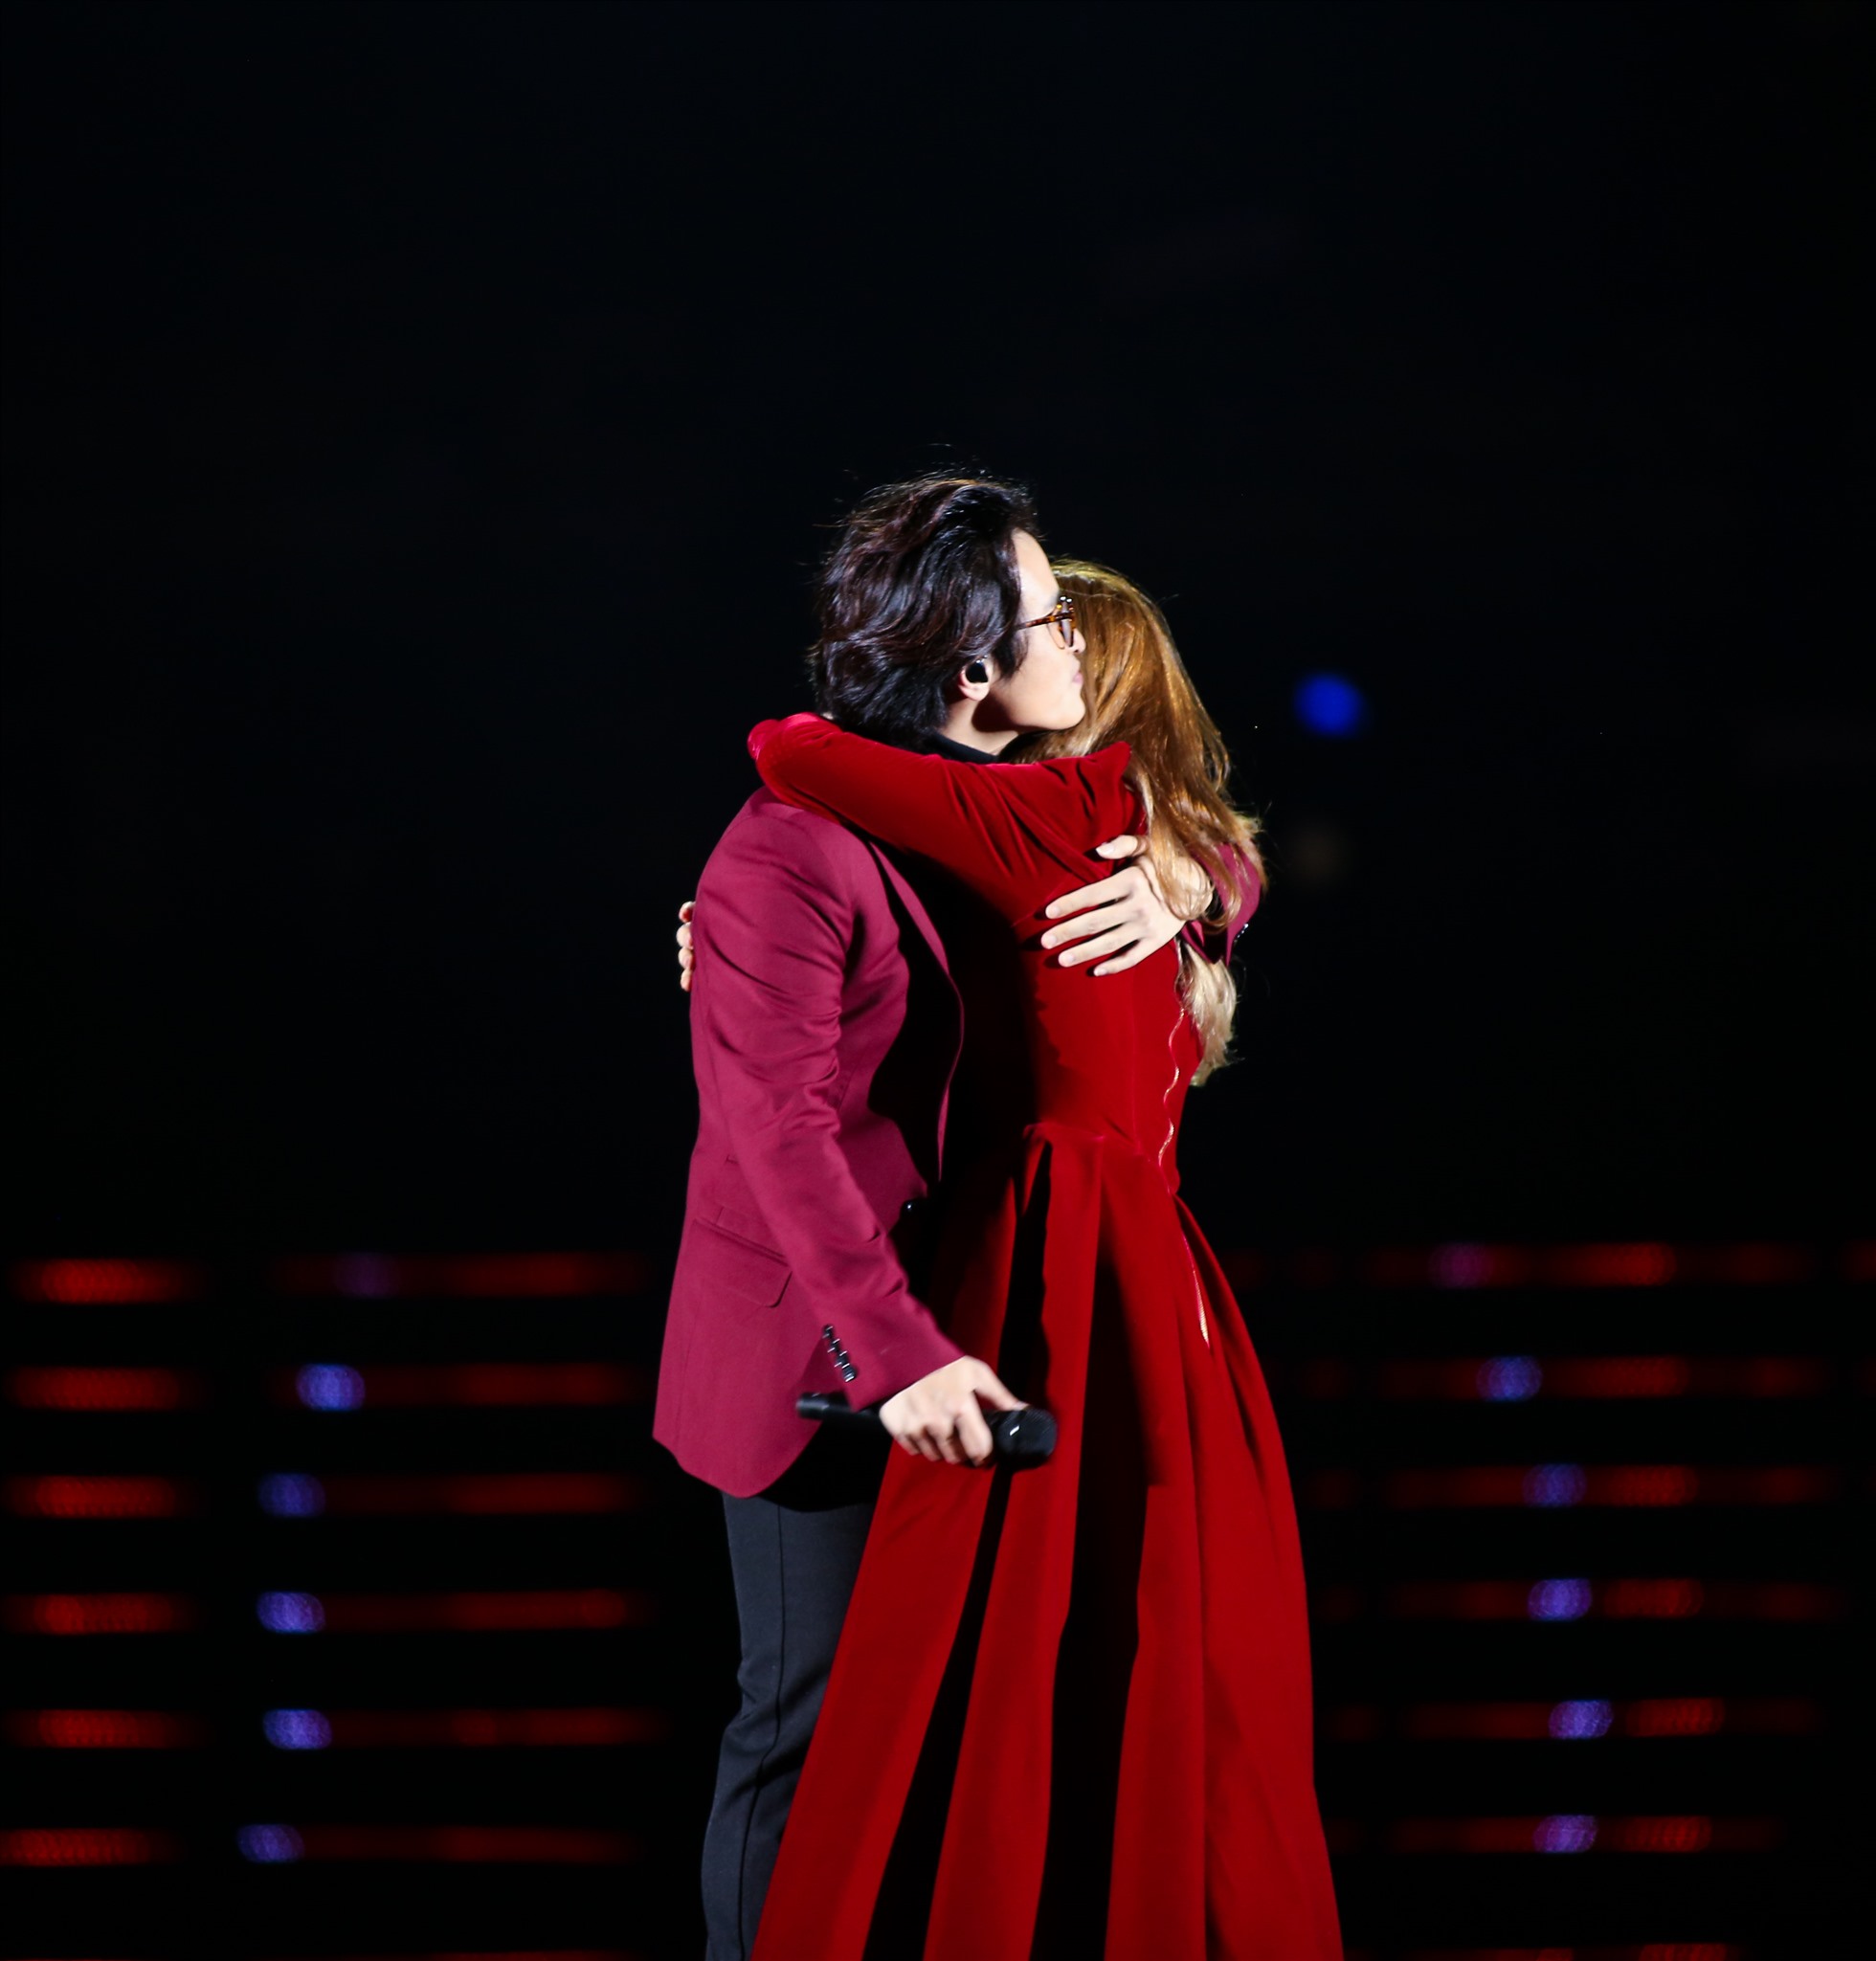 Đặc biệt đó là khoảnh khắc nữ ca sĩ ôm lấy “người tình âm nhạc” Hà Anh Tuấn.